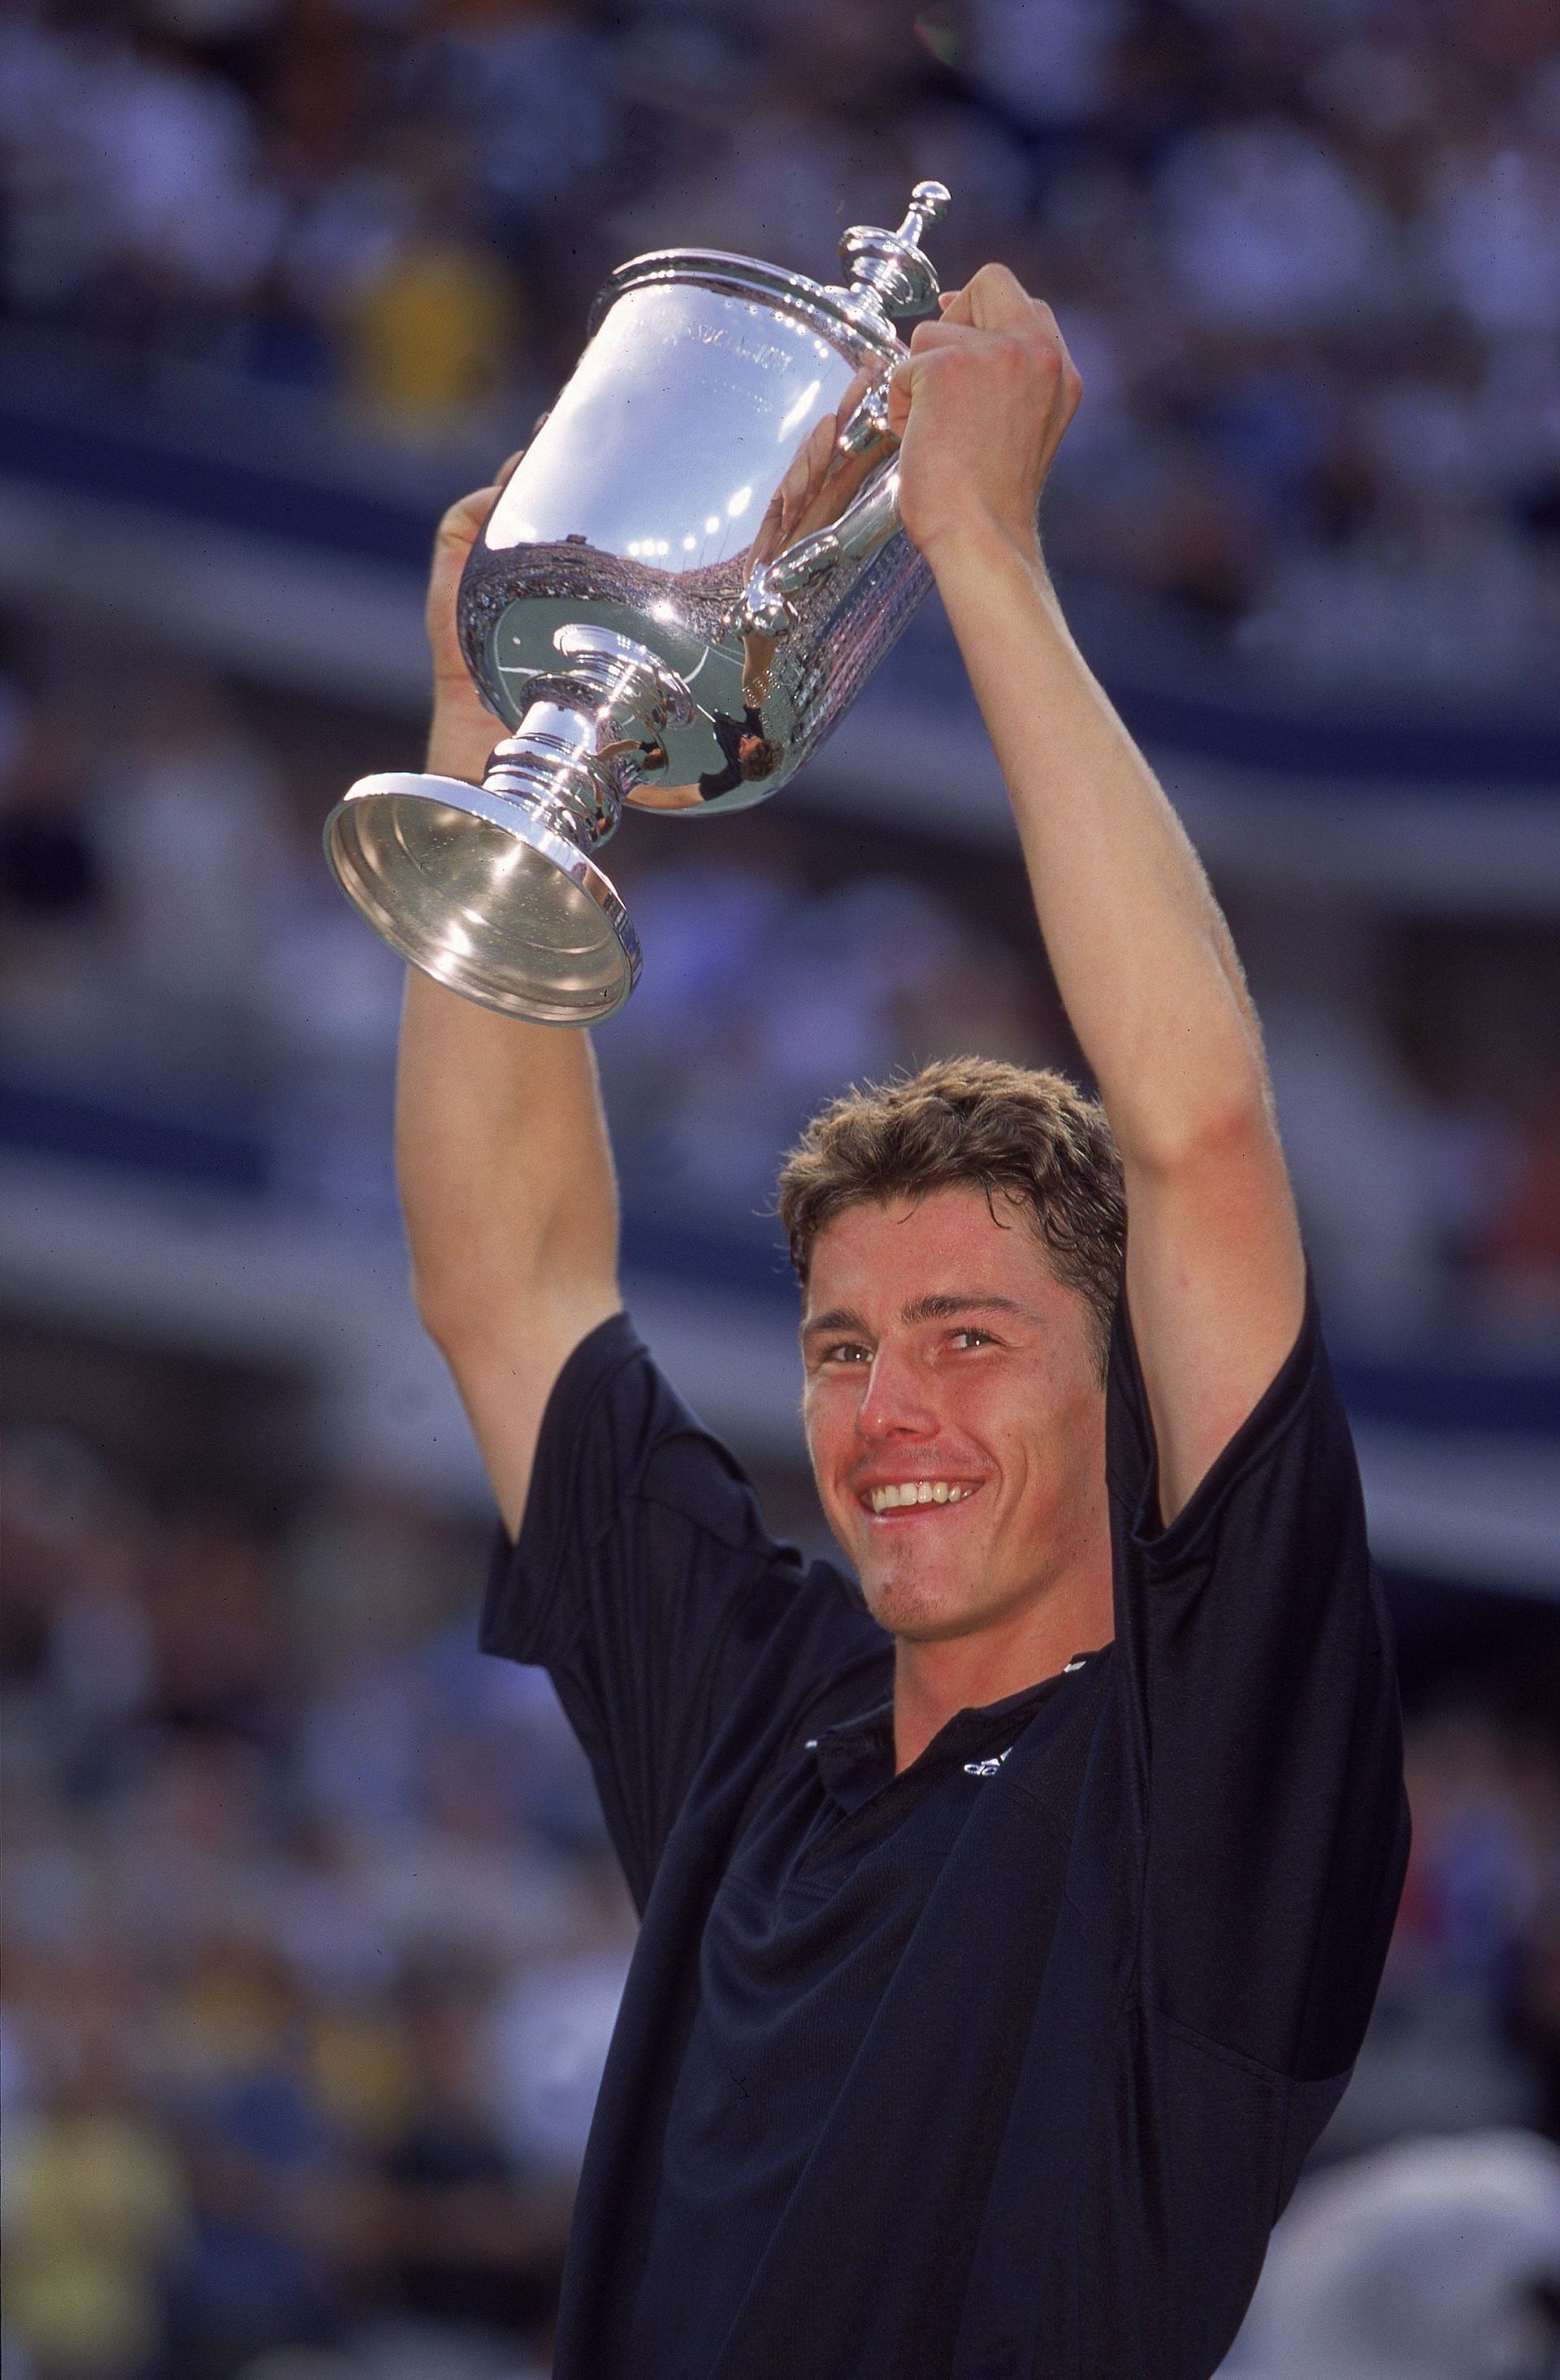 Marat Safin won the US Open in 2000.